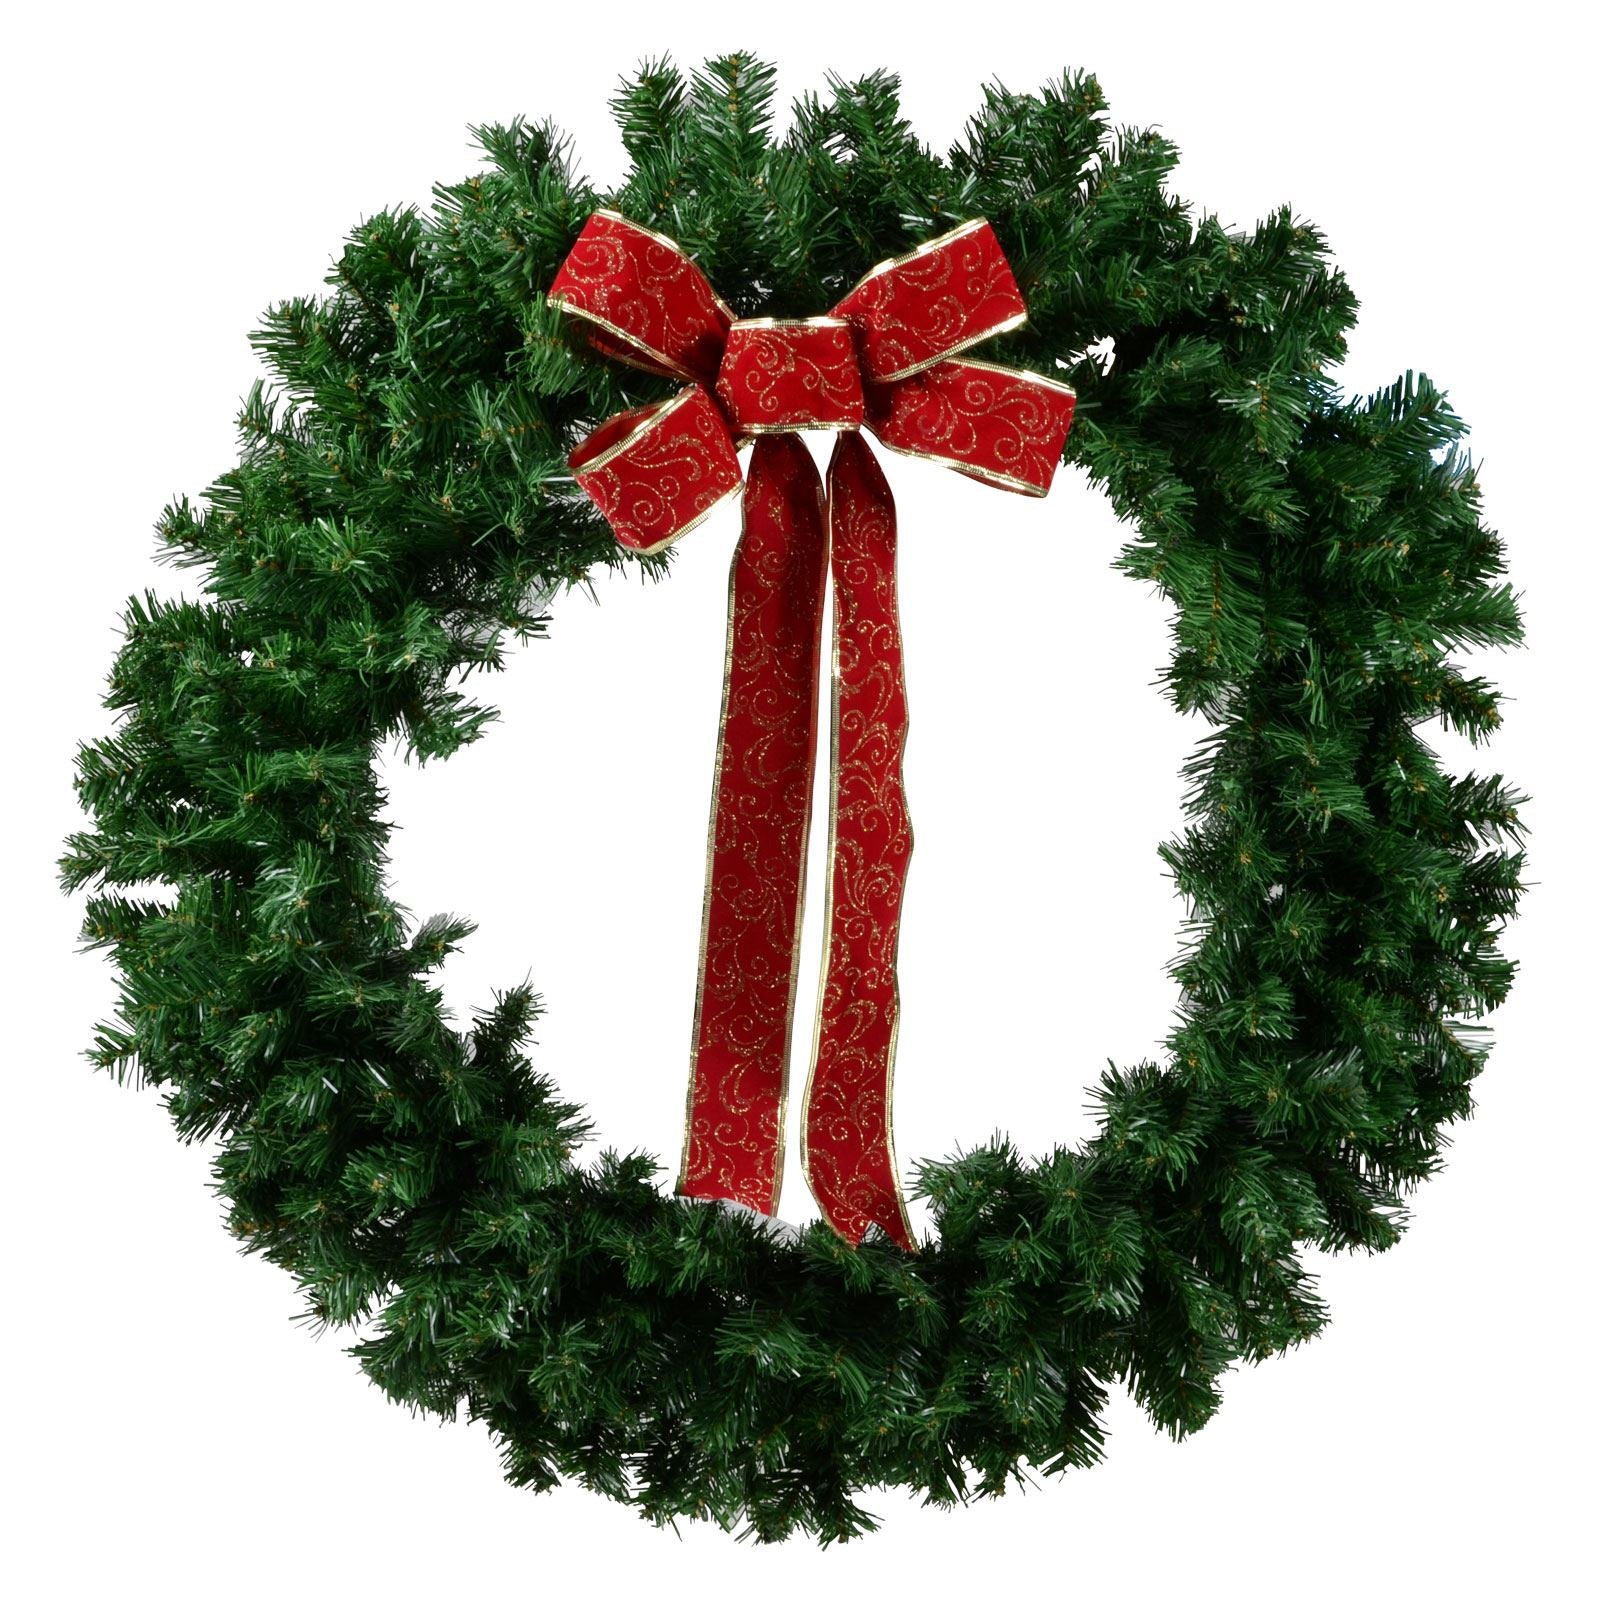 Mr Crimbo Large Christmas Wreath Green Pine Red Bow 36" - MrCrimbo.co.uk -XS1673 - -Decorations